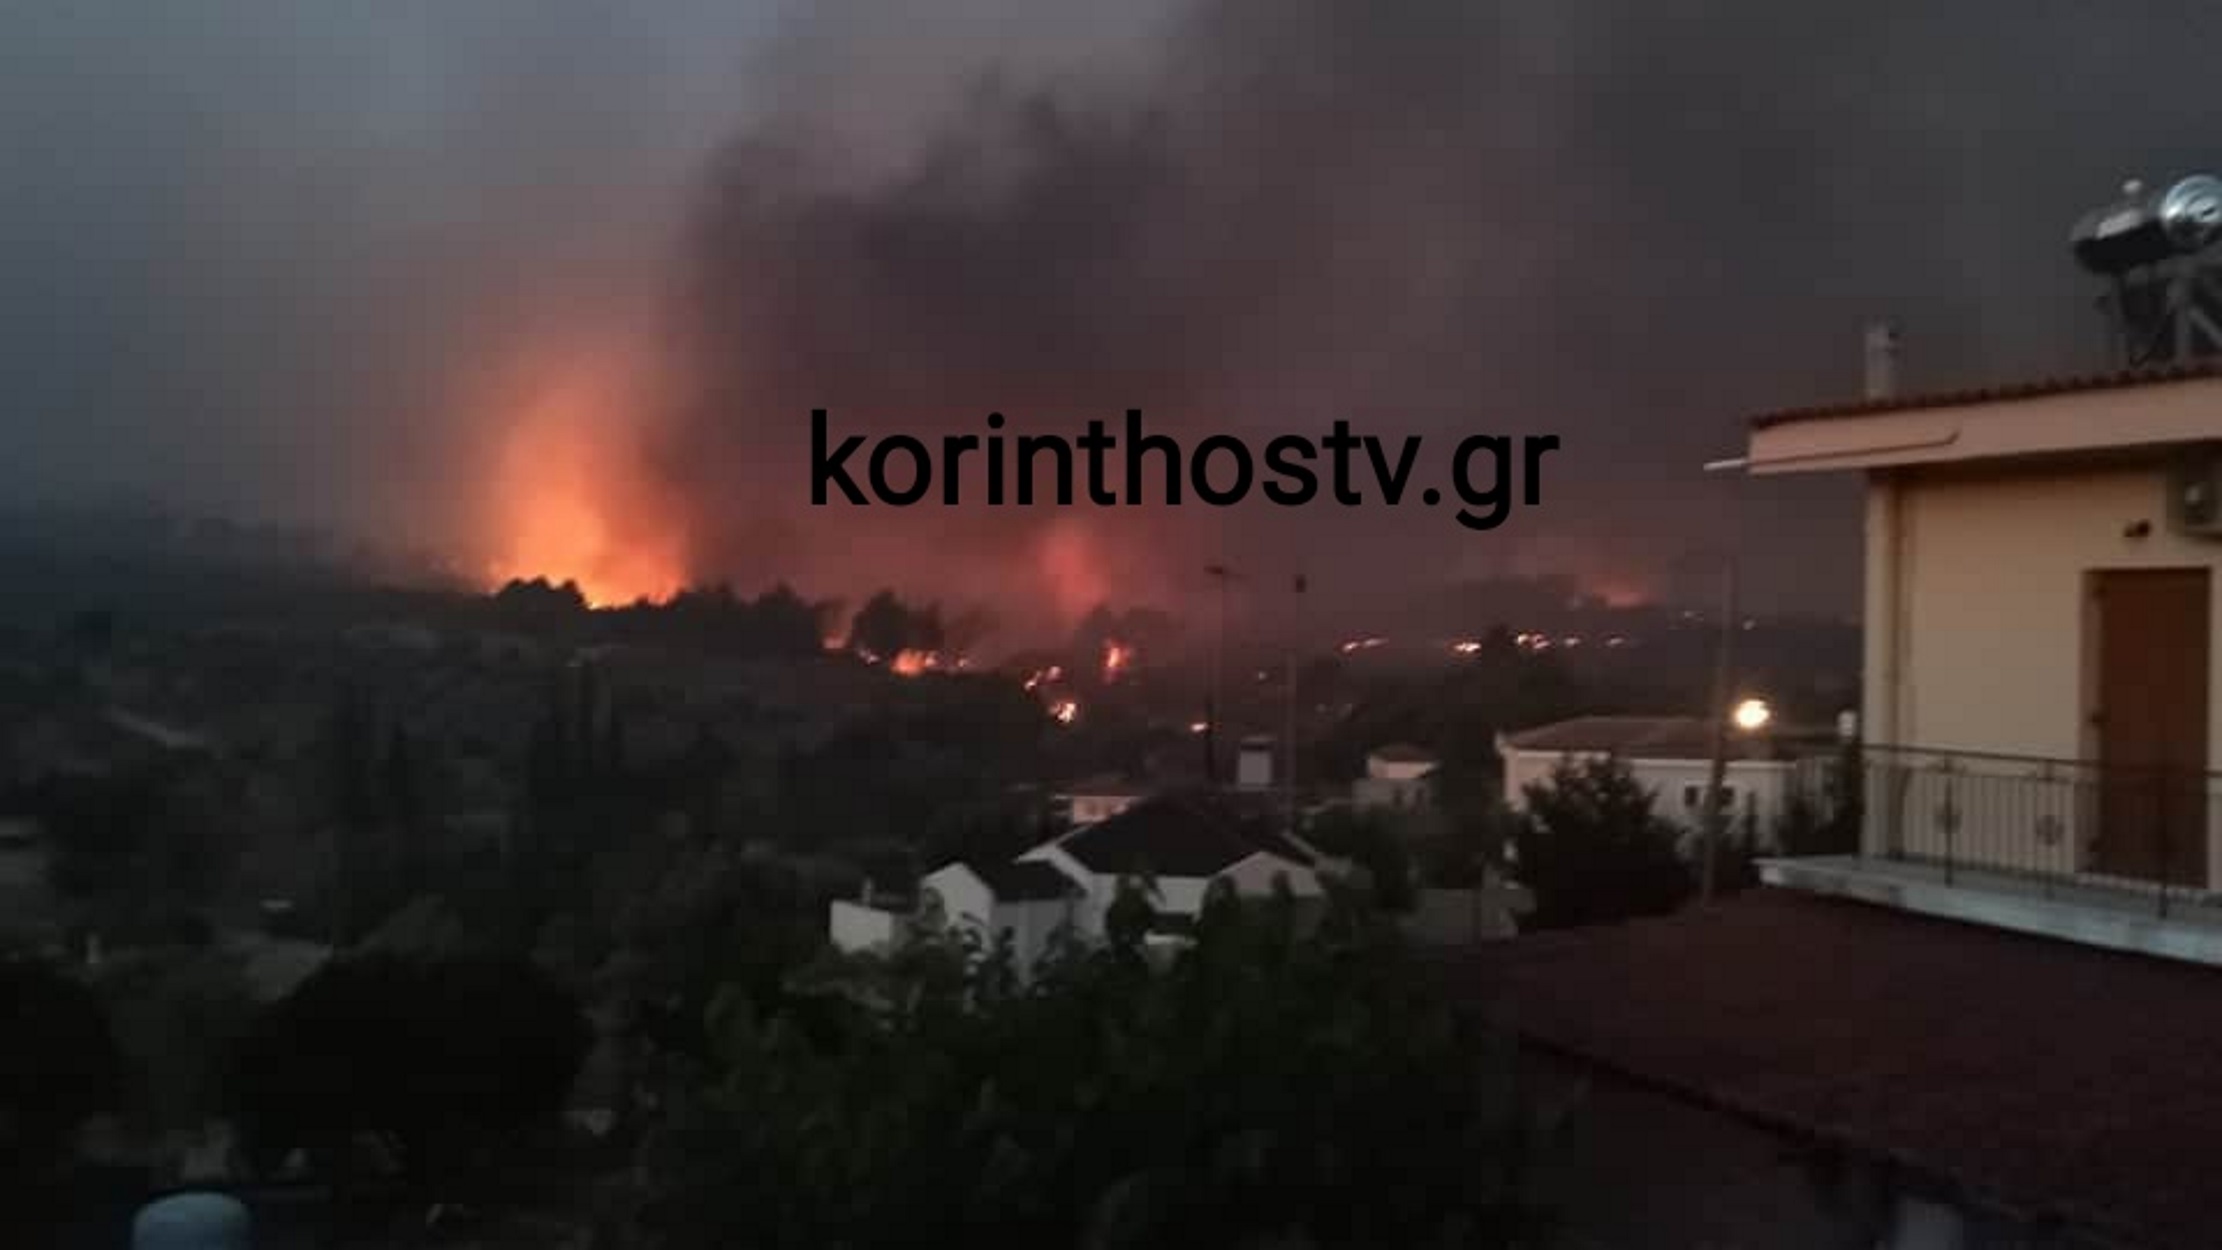 Κορινθία: Ολονύχτια μάχη με τη φωτιά – Οι φλόγες μπήκαν σε σπίτια ενώ εκκενώθηκαν οικισμοί (pics, video)